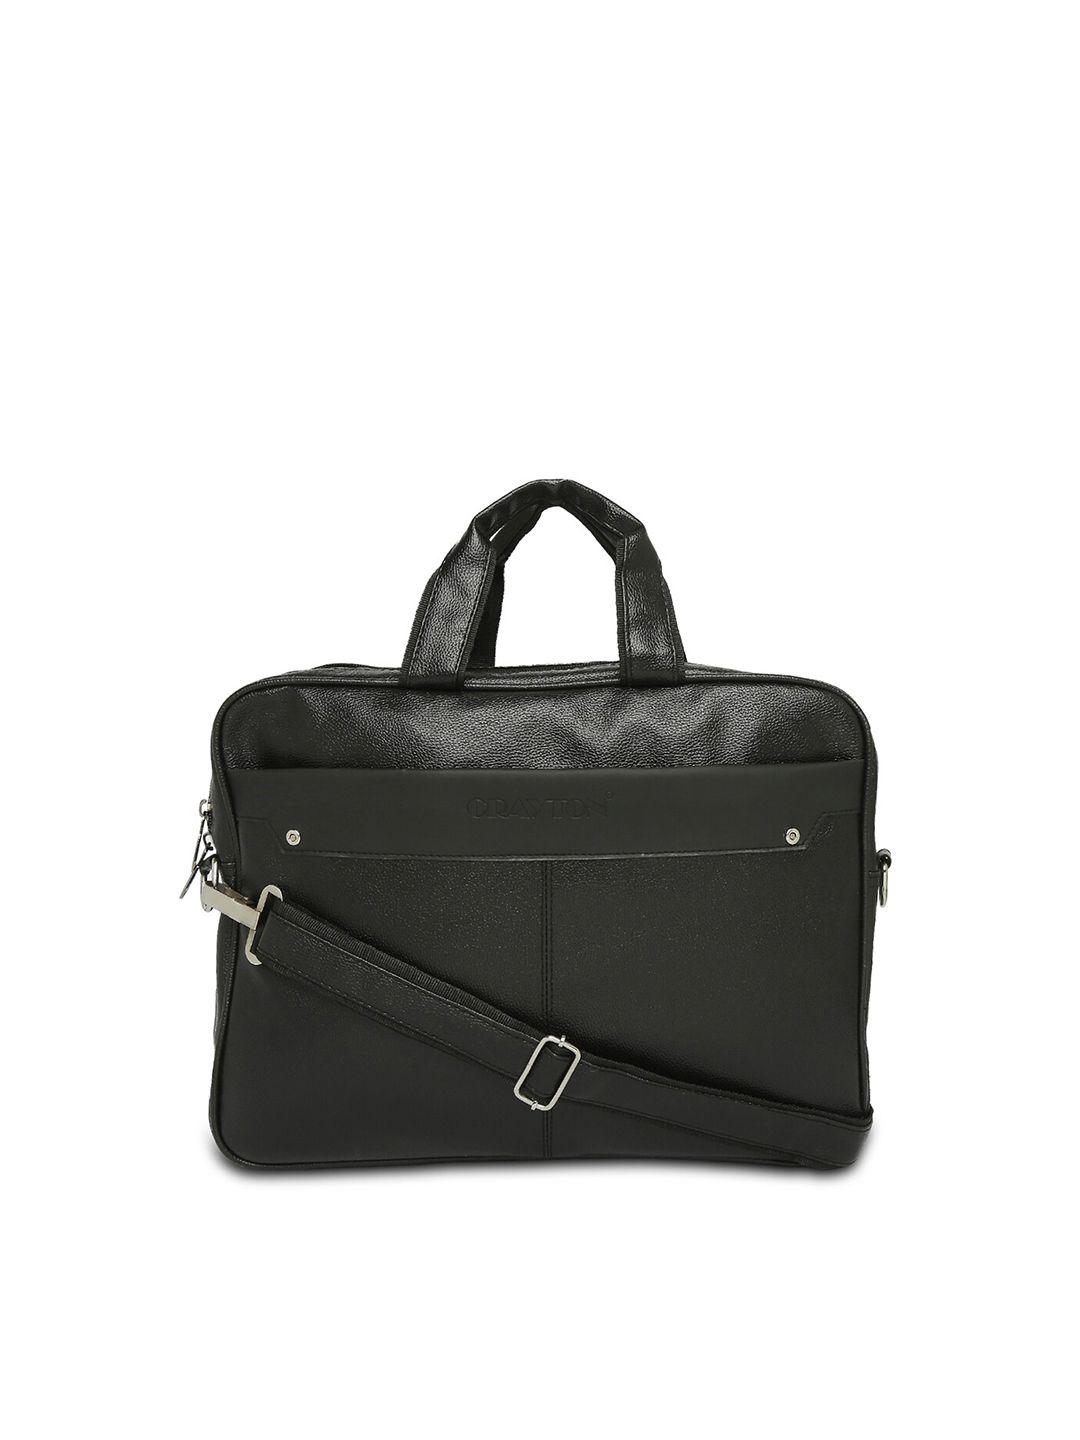 crayton vegan leather 15 inch laptop bag